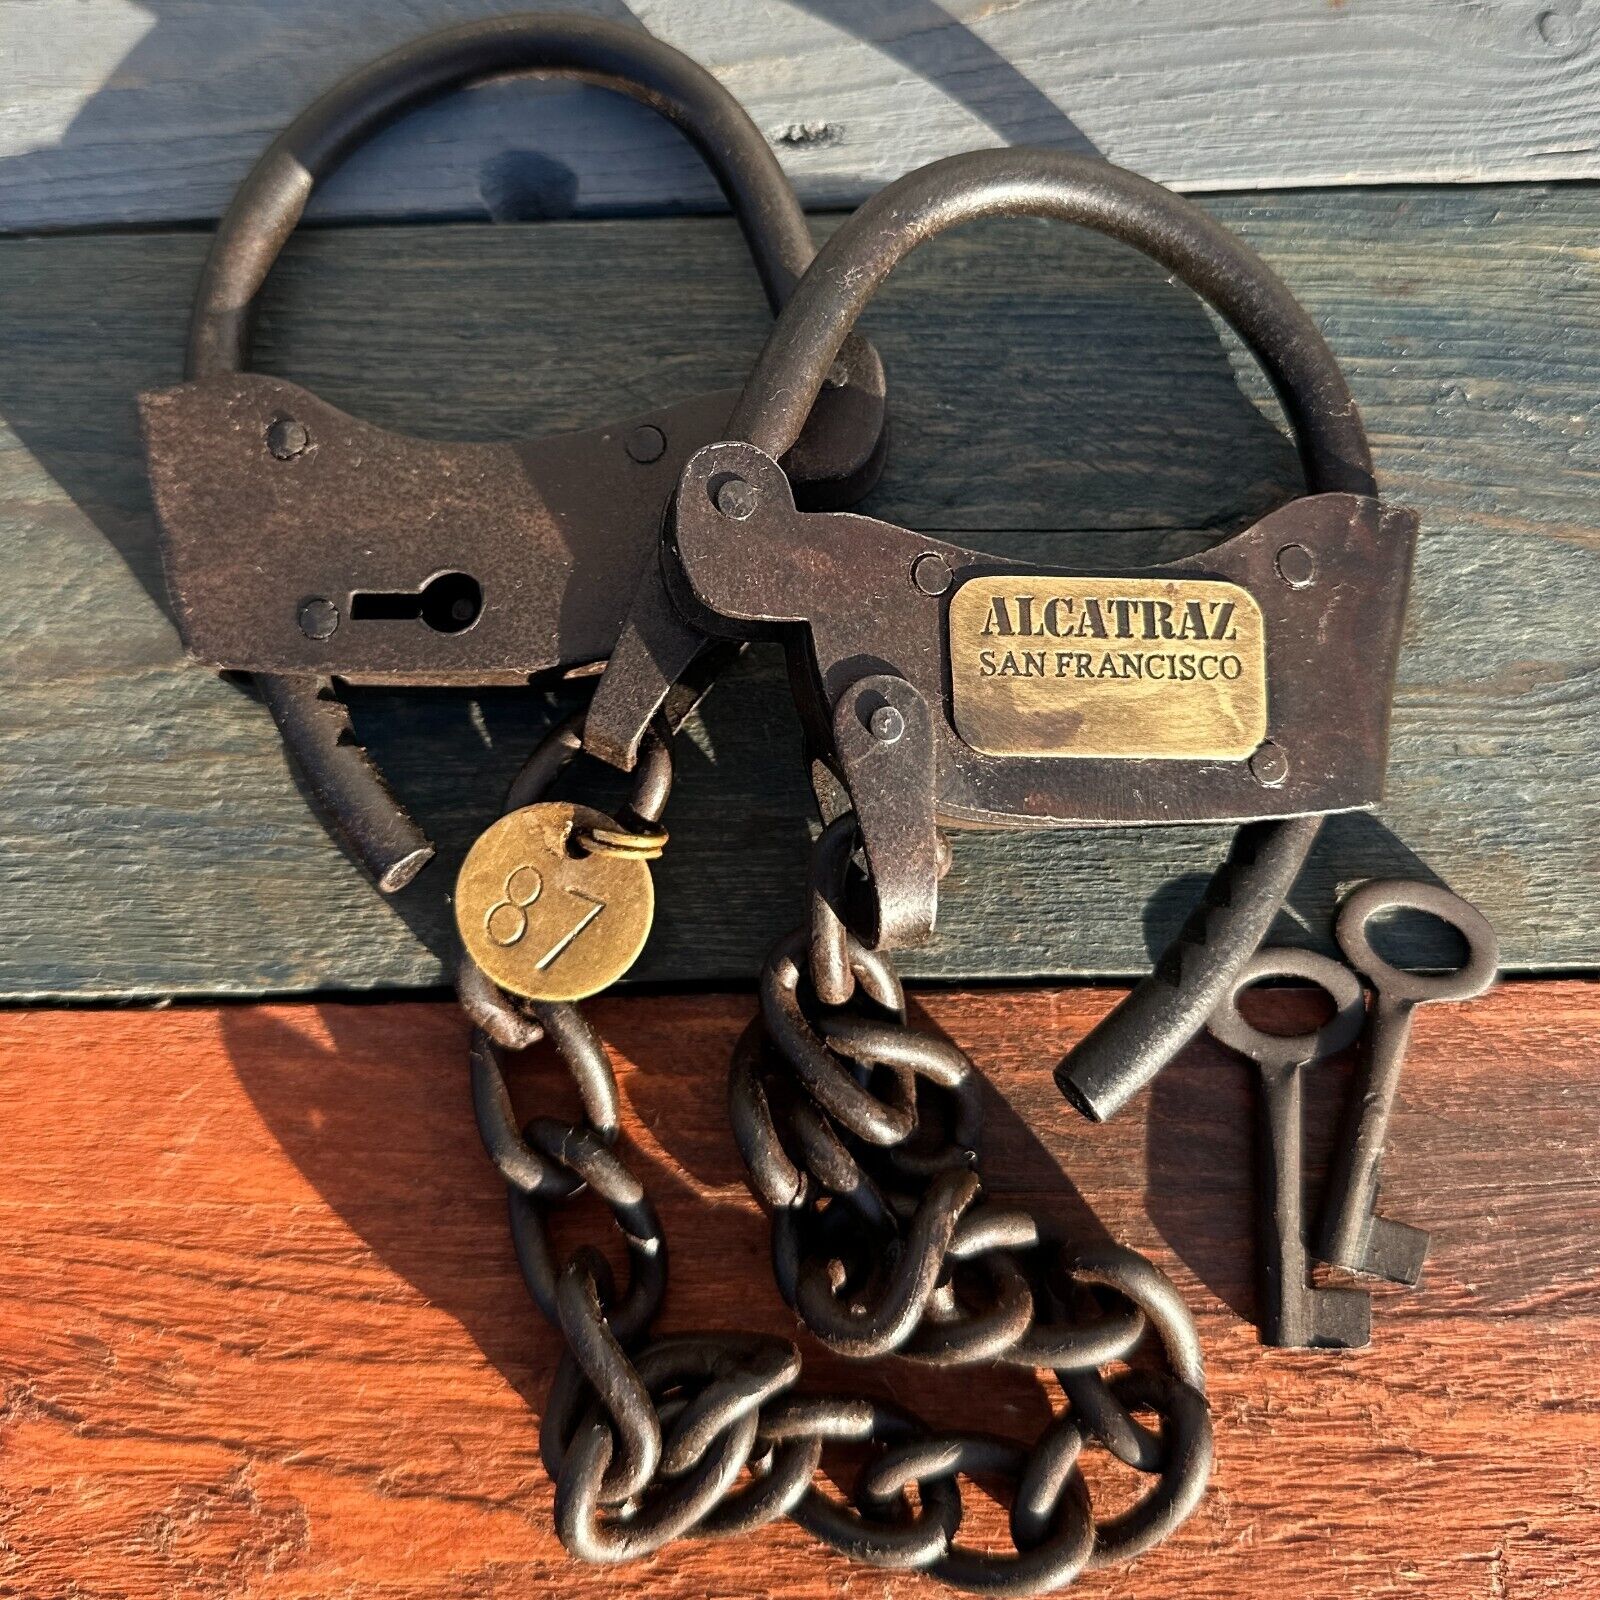 Alcatraz Prison Handcuffs, Iron Adjustable Cuffs with Chain & Antique Finish